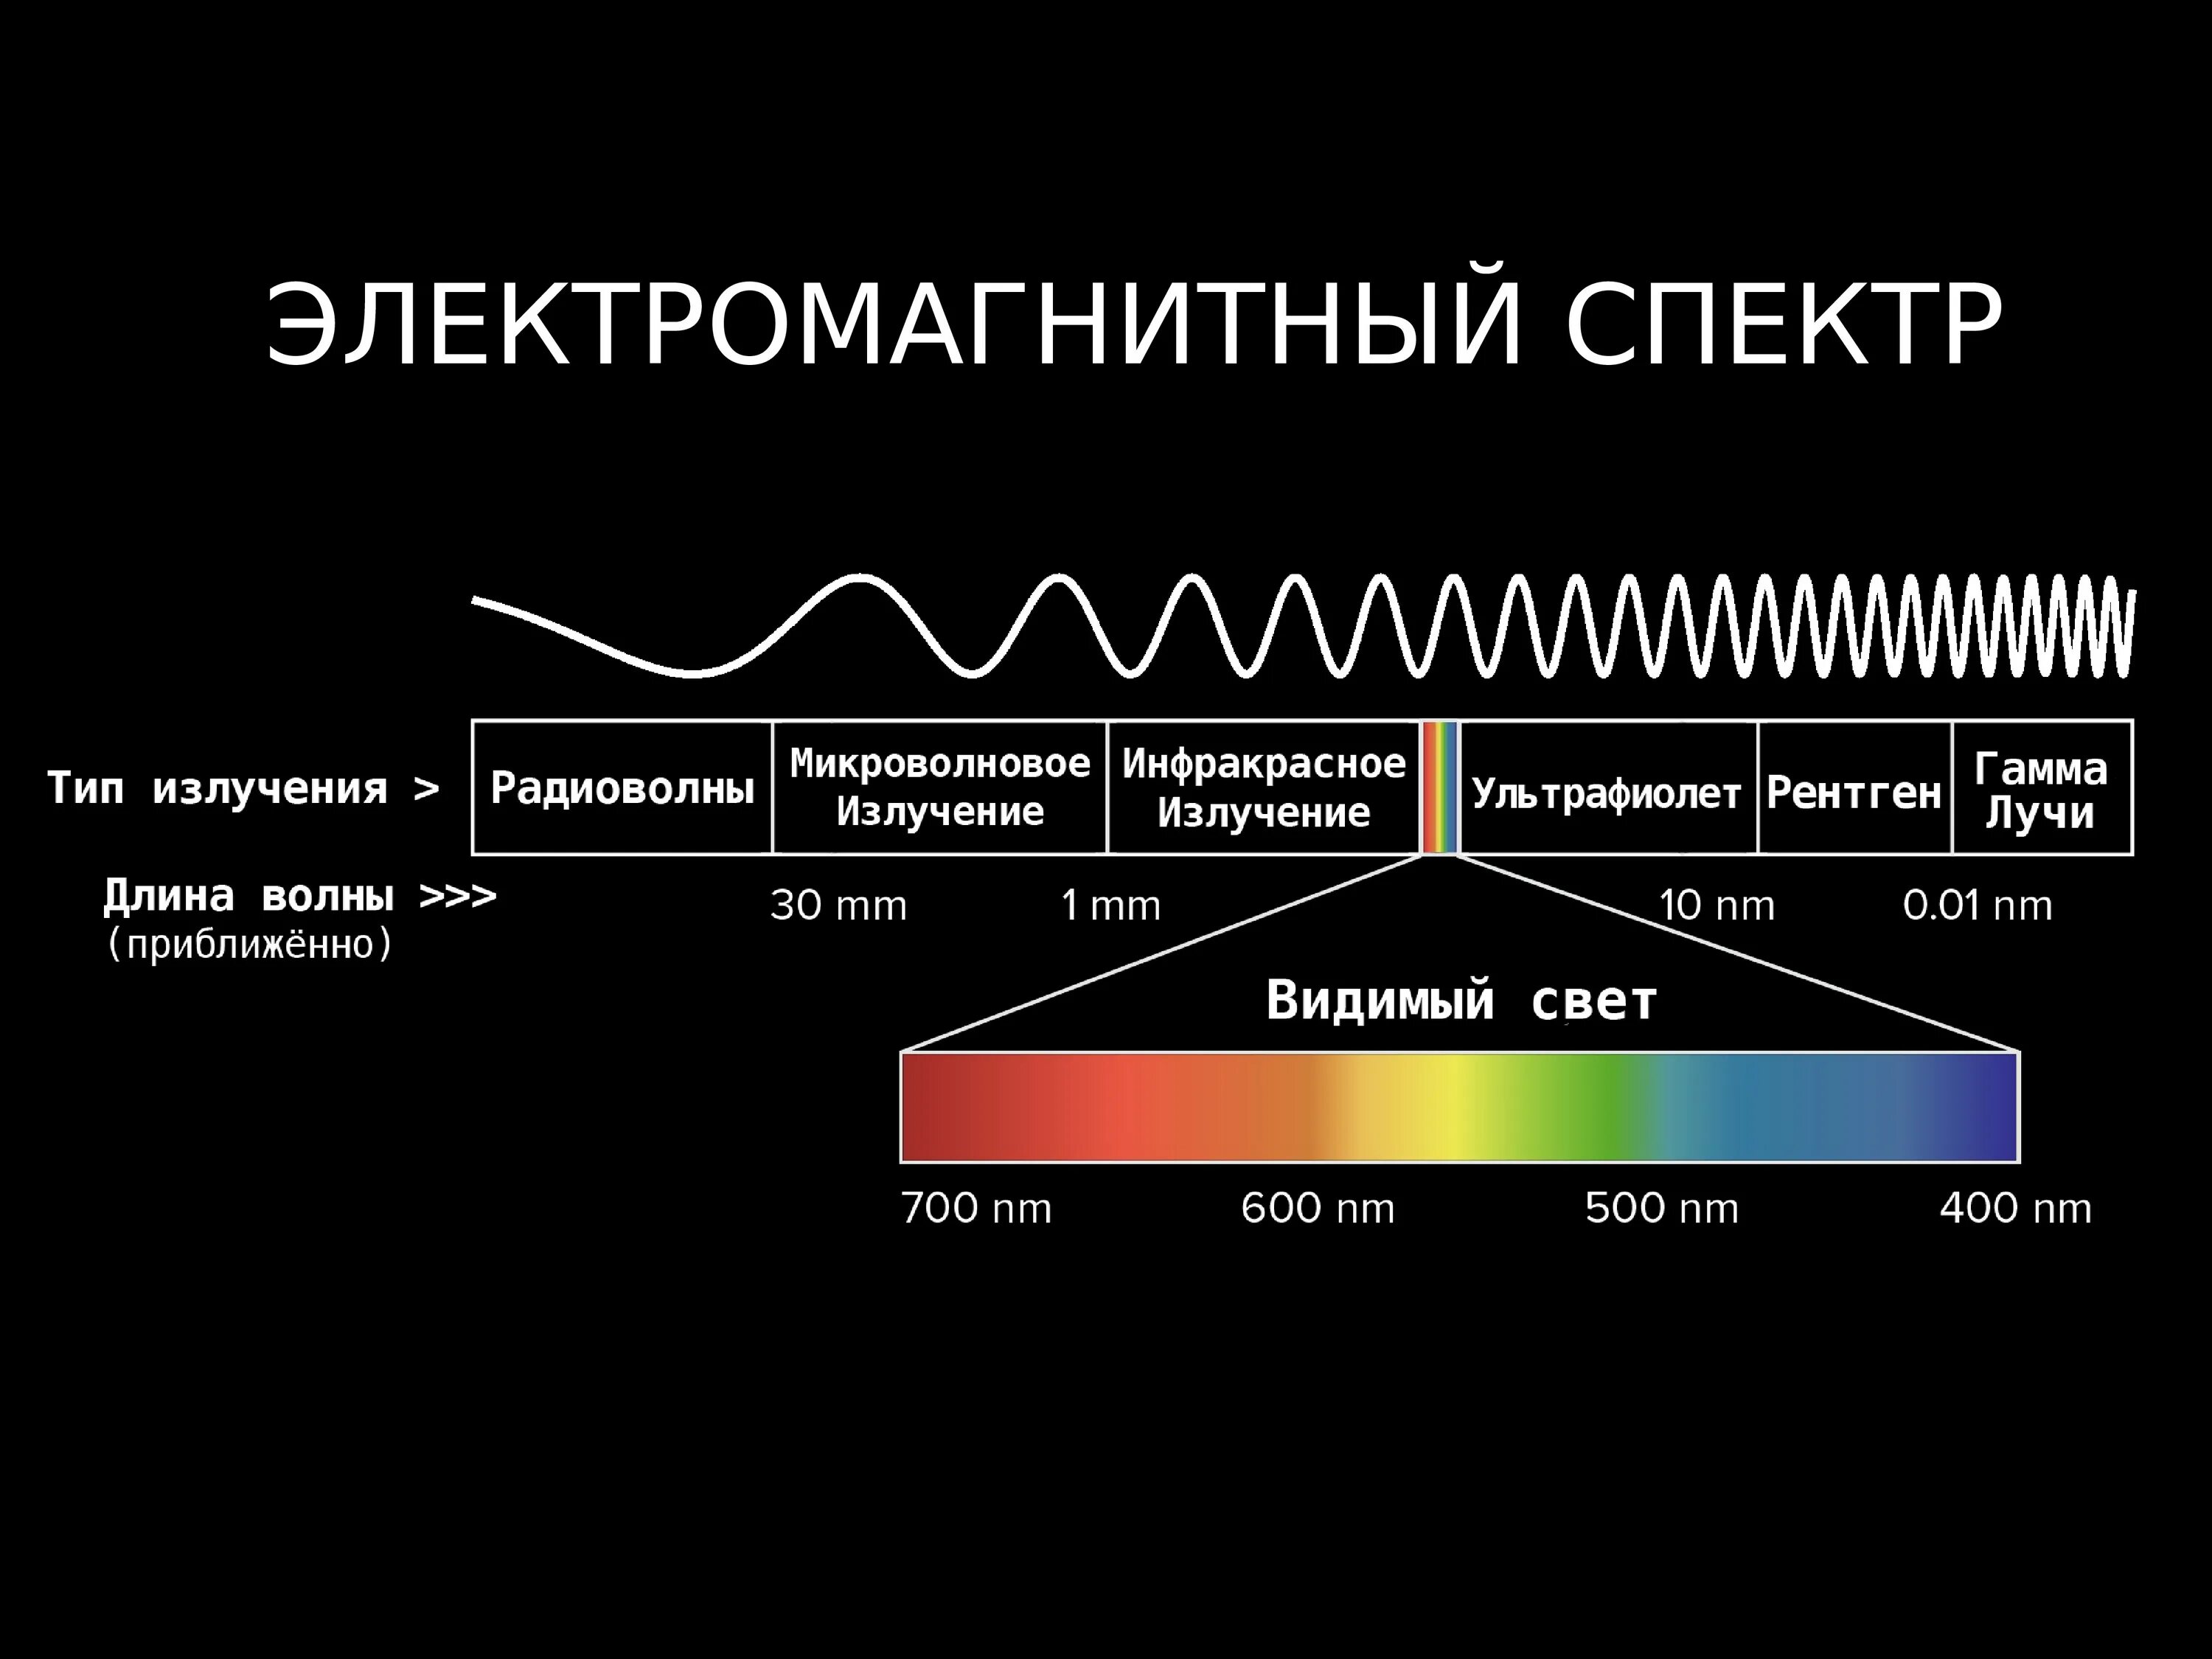 Диапазоны спектра электромагнитного излучения. Электромагнитное излучение спектр электромагнитного излучения. Спектр длин волн электромагнитных излучений. Длина волны электромагнитного излучения. Определяется частотой излучения